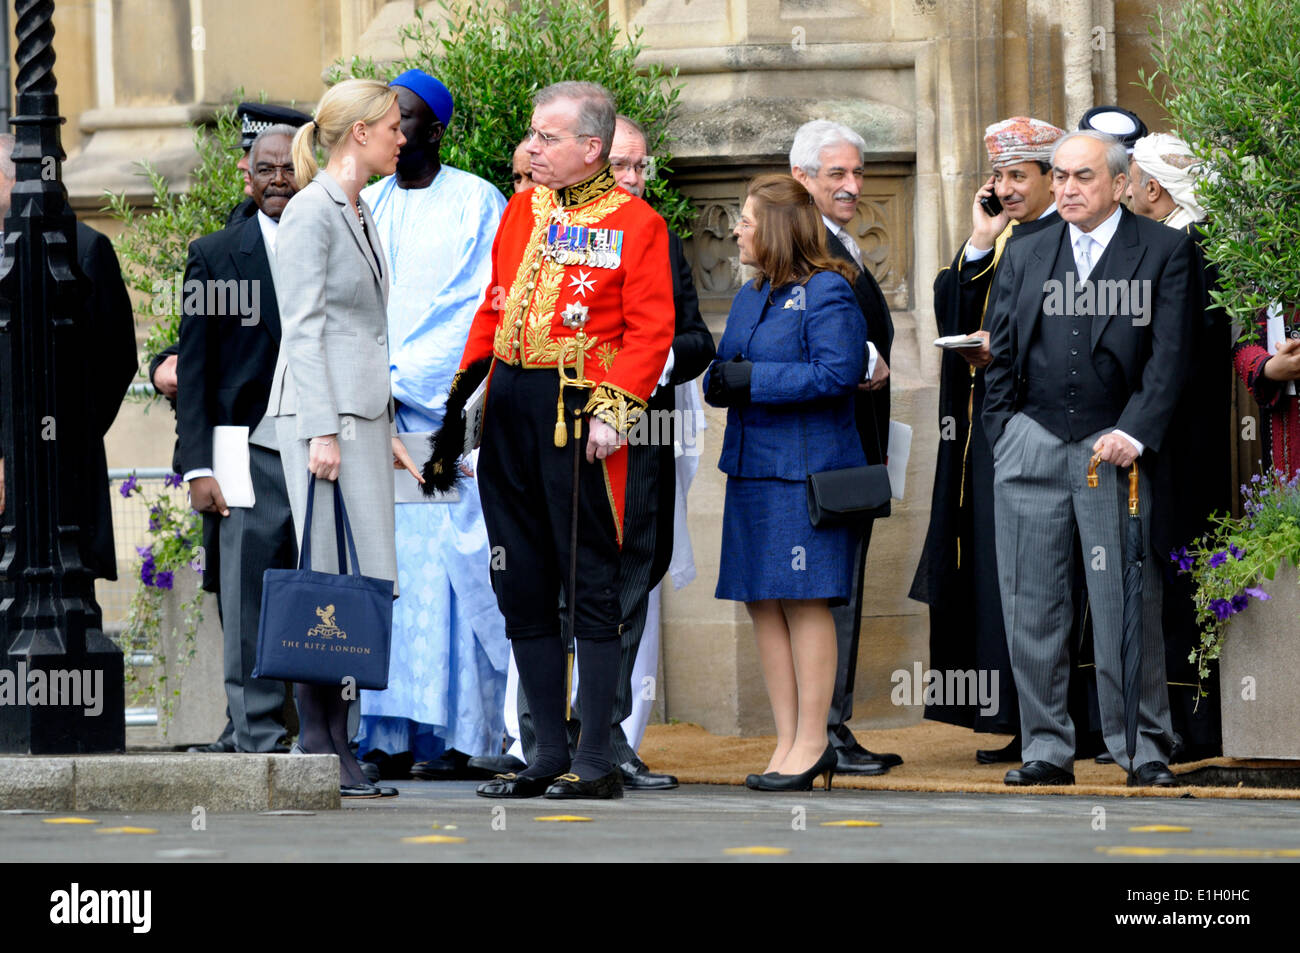 Londres, Royaume-Uni. 04 Juin, 2014. L'état d'ouverture du Parlement, Westminster, Londres. Les dignitaires invités attendent leurs voitures après la cérémonie Banque D'Images